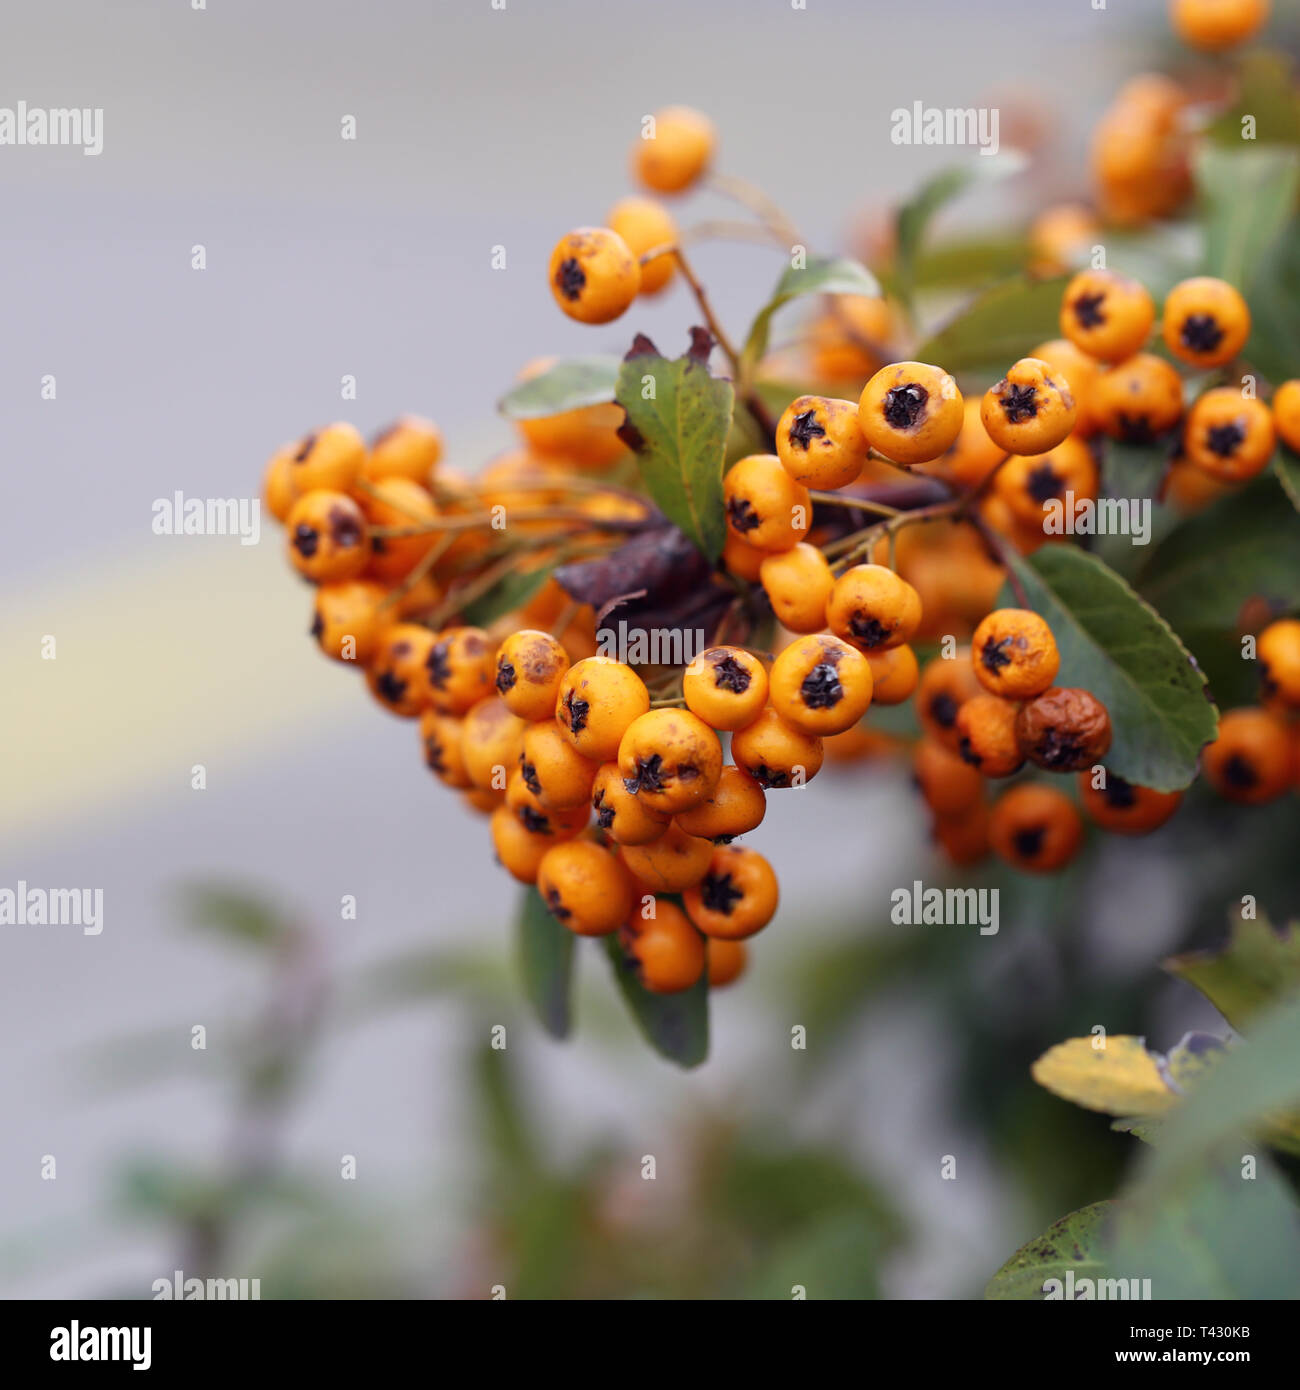 Bacche di colore arancione appeso a un ramo di bush. Lo sfondo include belle foglie verdi e qualche asfalto. Primo piano. Immagine a colori. Foto Stock